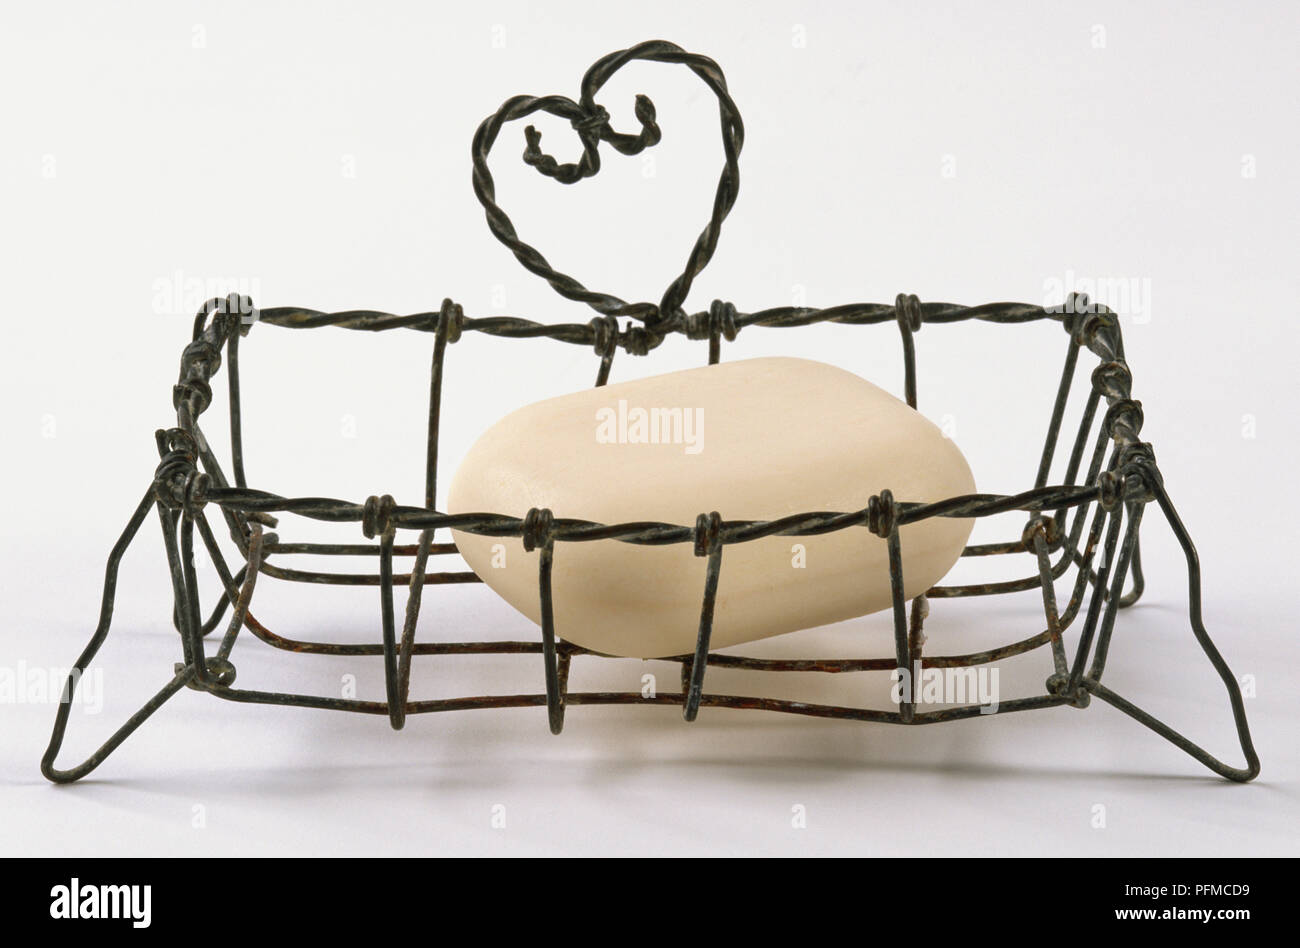 Filo rack di sapone, a forma di cuore, design azienda barra di sapone. Foto Stock